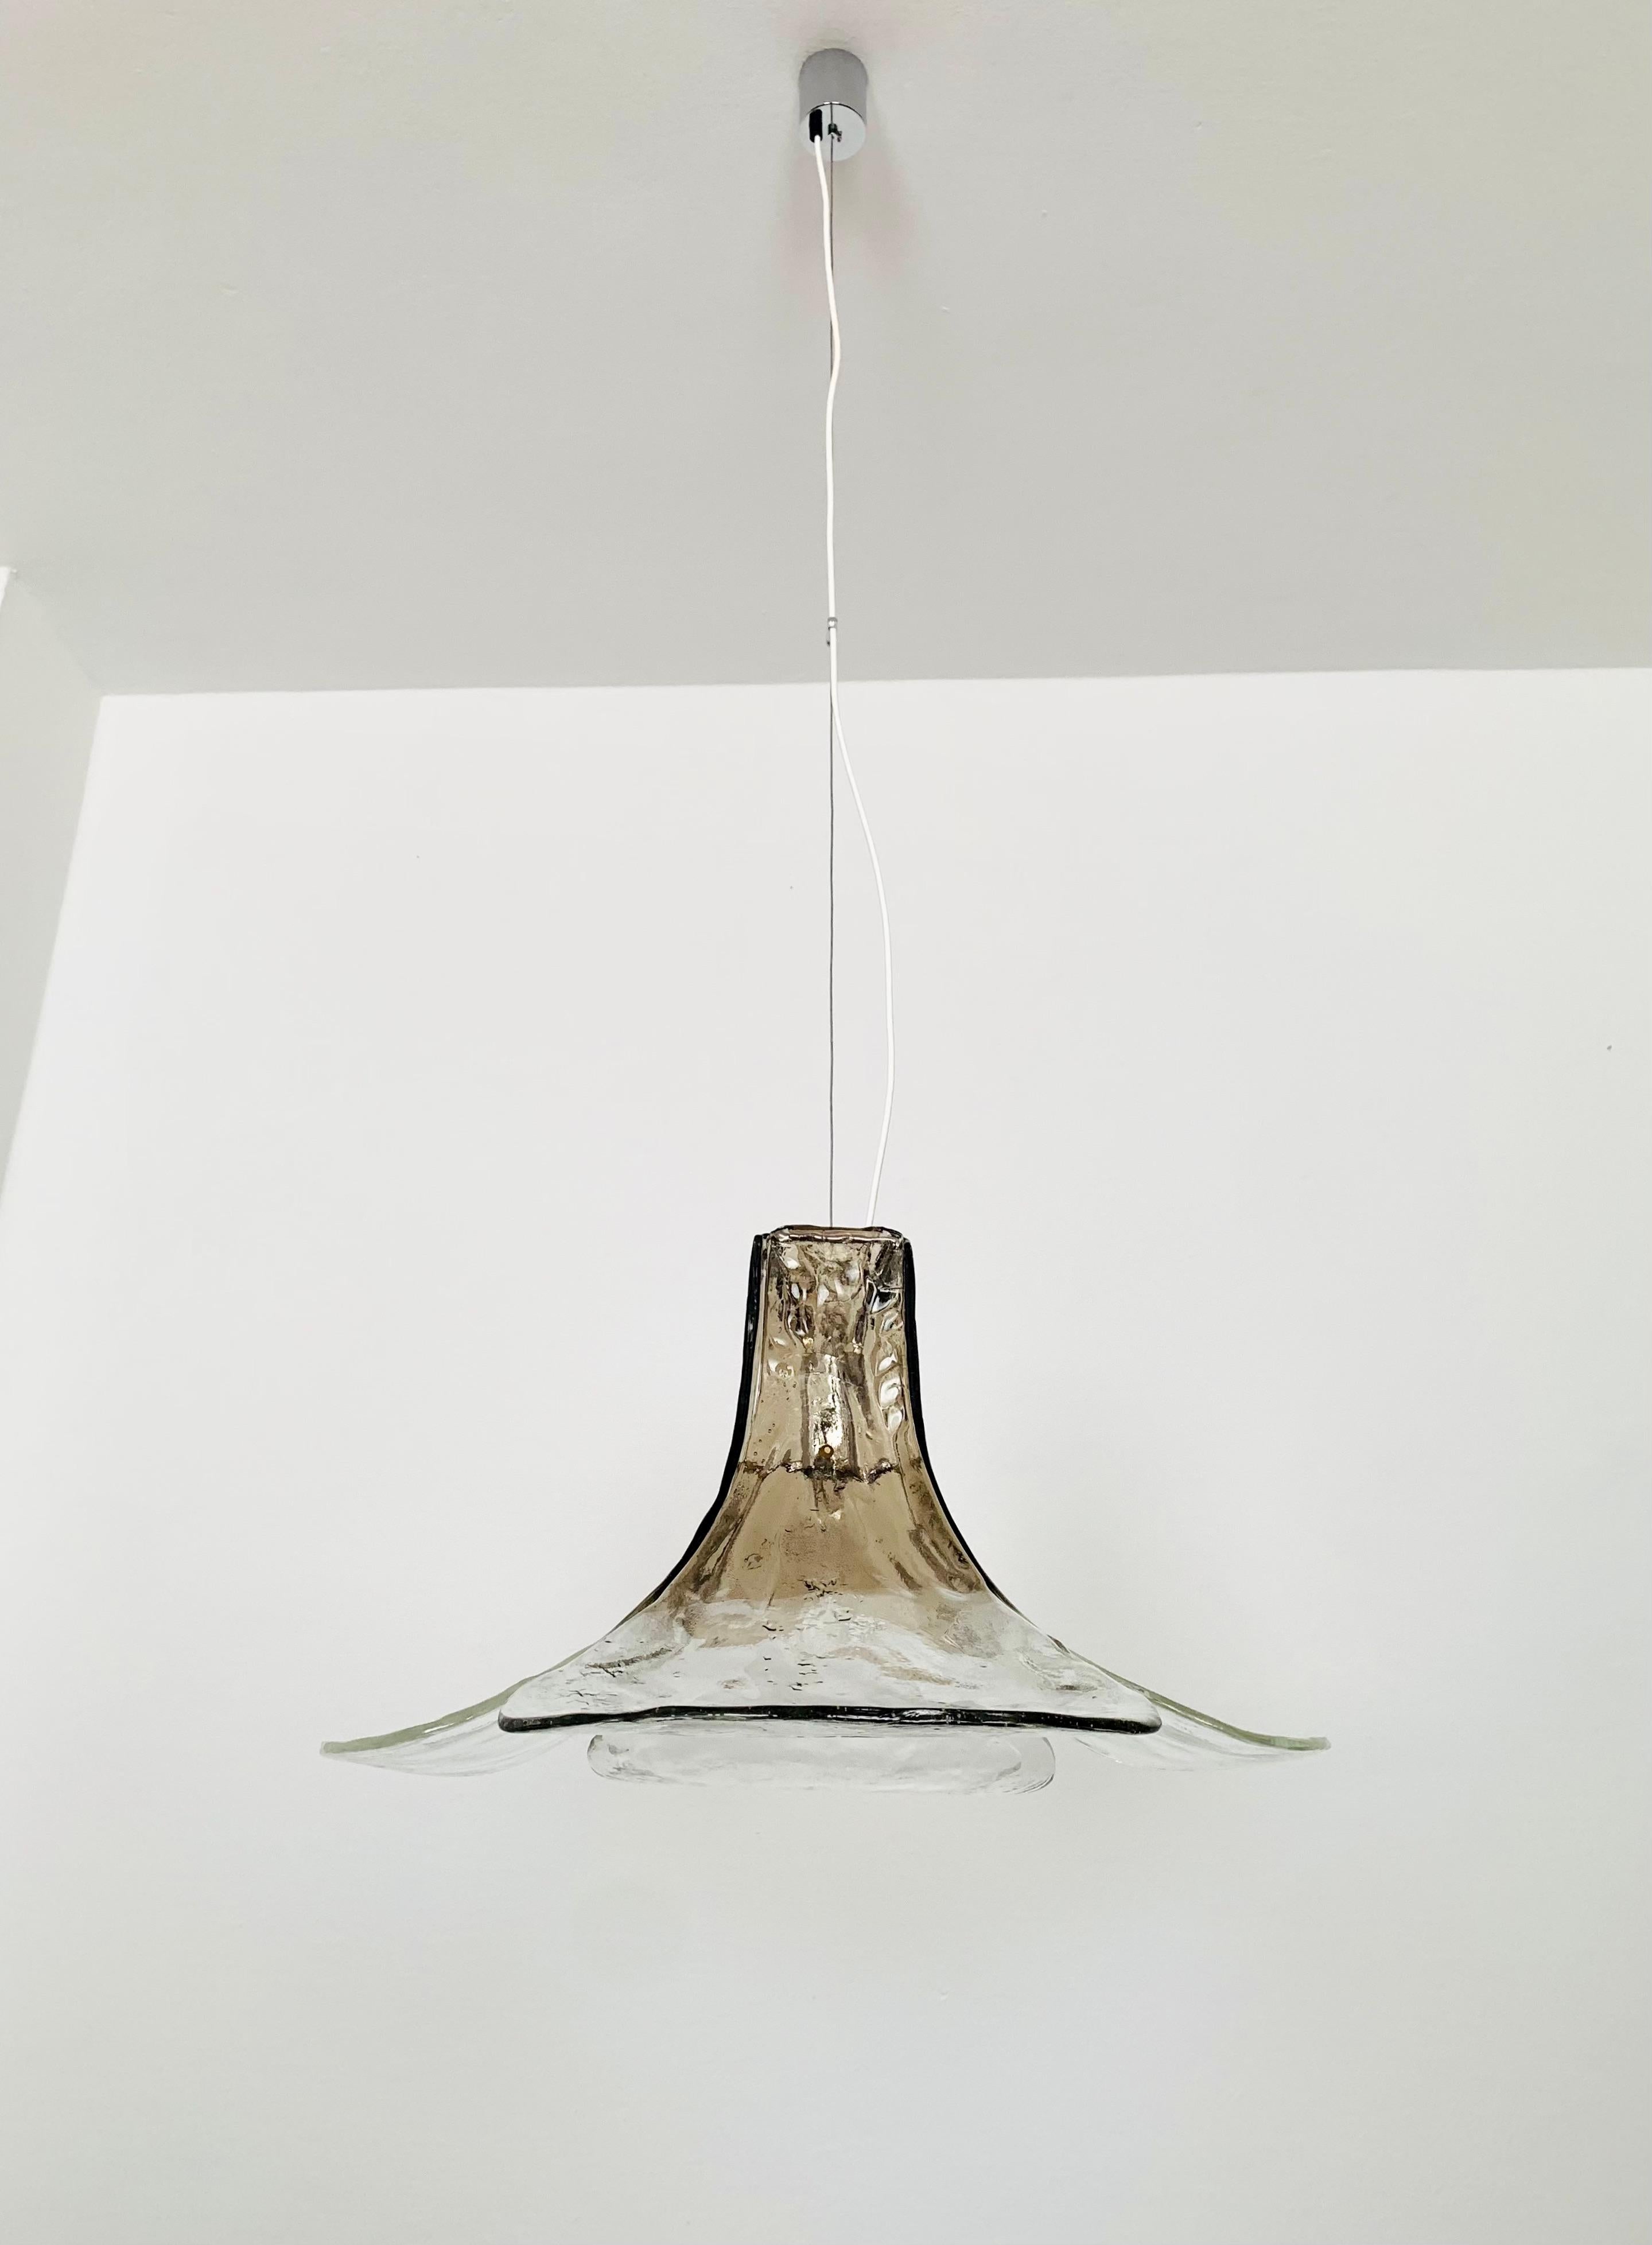 Très beau plafonnier en verre de Murano des années 1960.
La lampe est très élégante.
La structure des verres crée une lumière très pétillante.
Un design fantastique et un atout pour n'importe quelle maison.

Fabricant : Mazzega
Design/One : Carlo